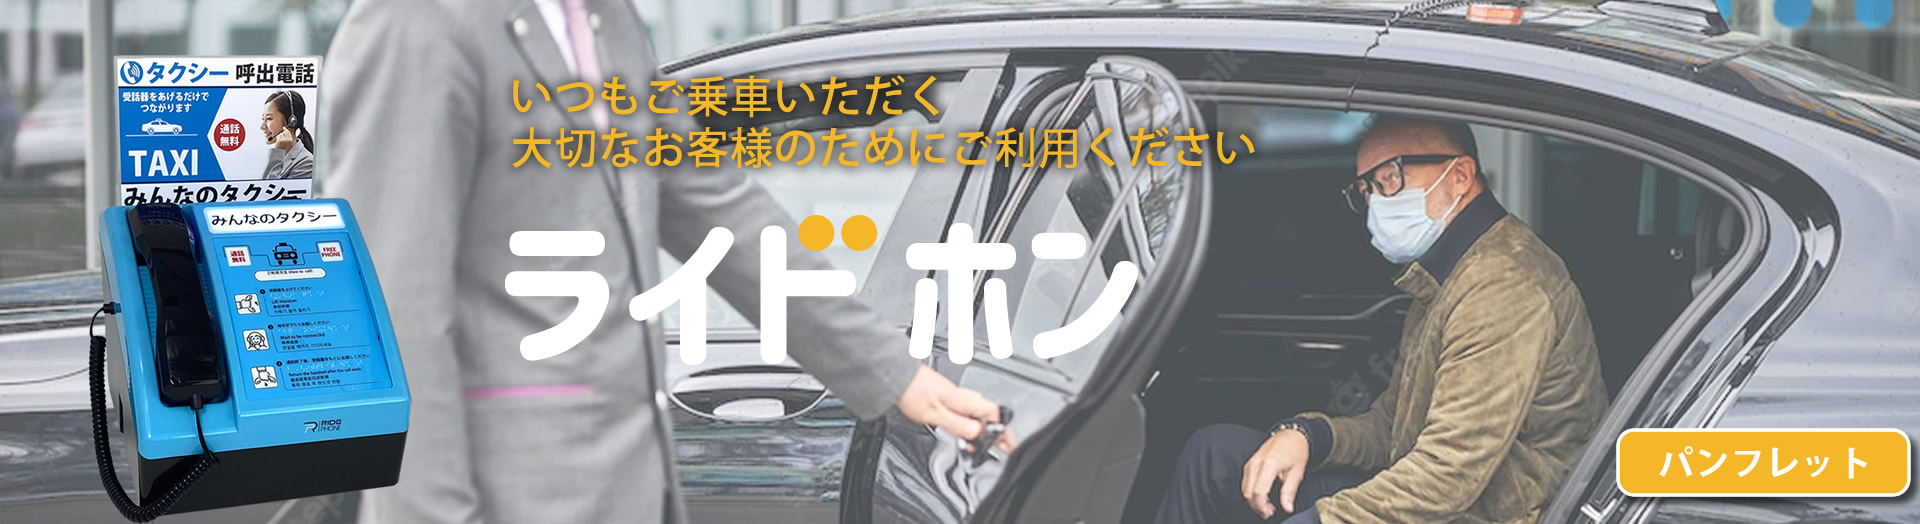 タクシー呼出専用電話 ライドホン-RidePhone